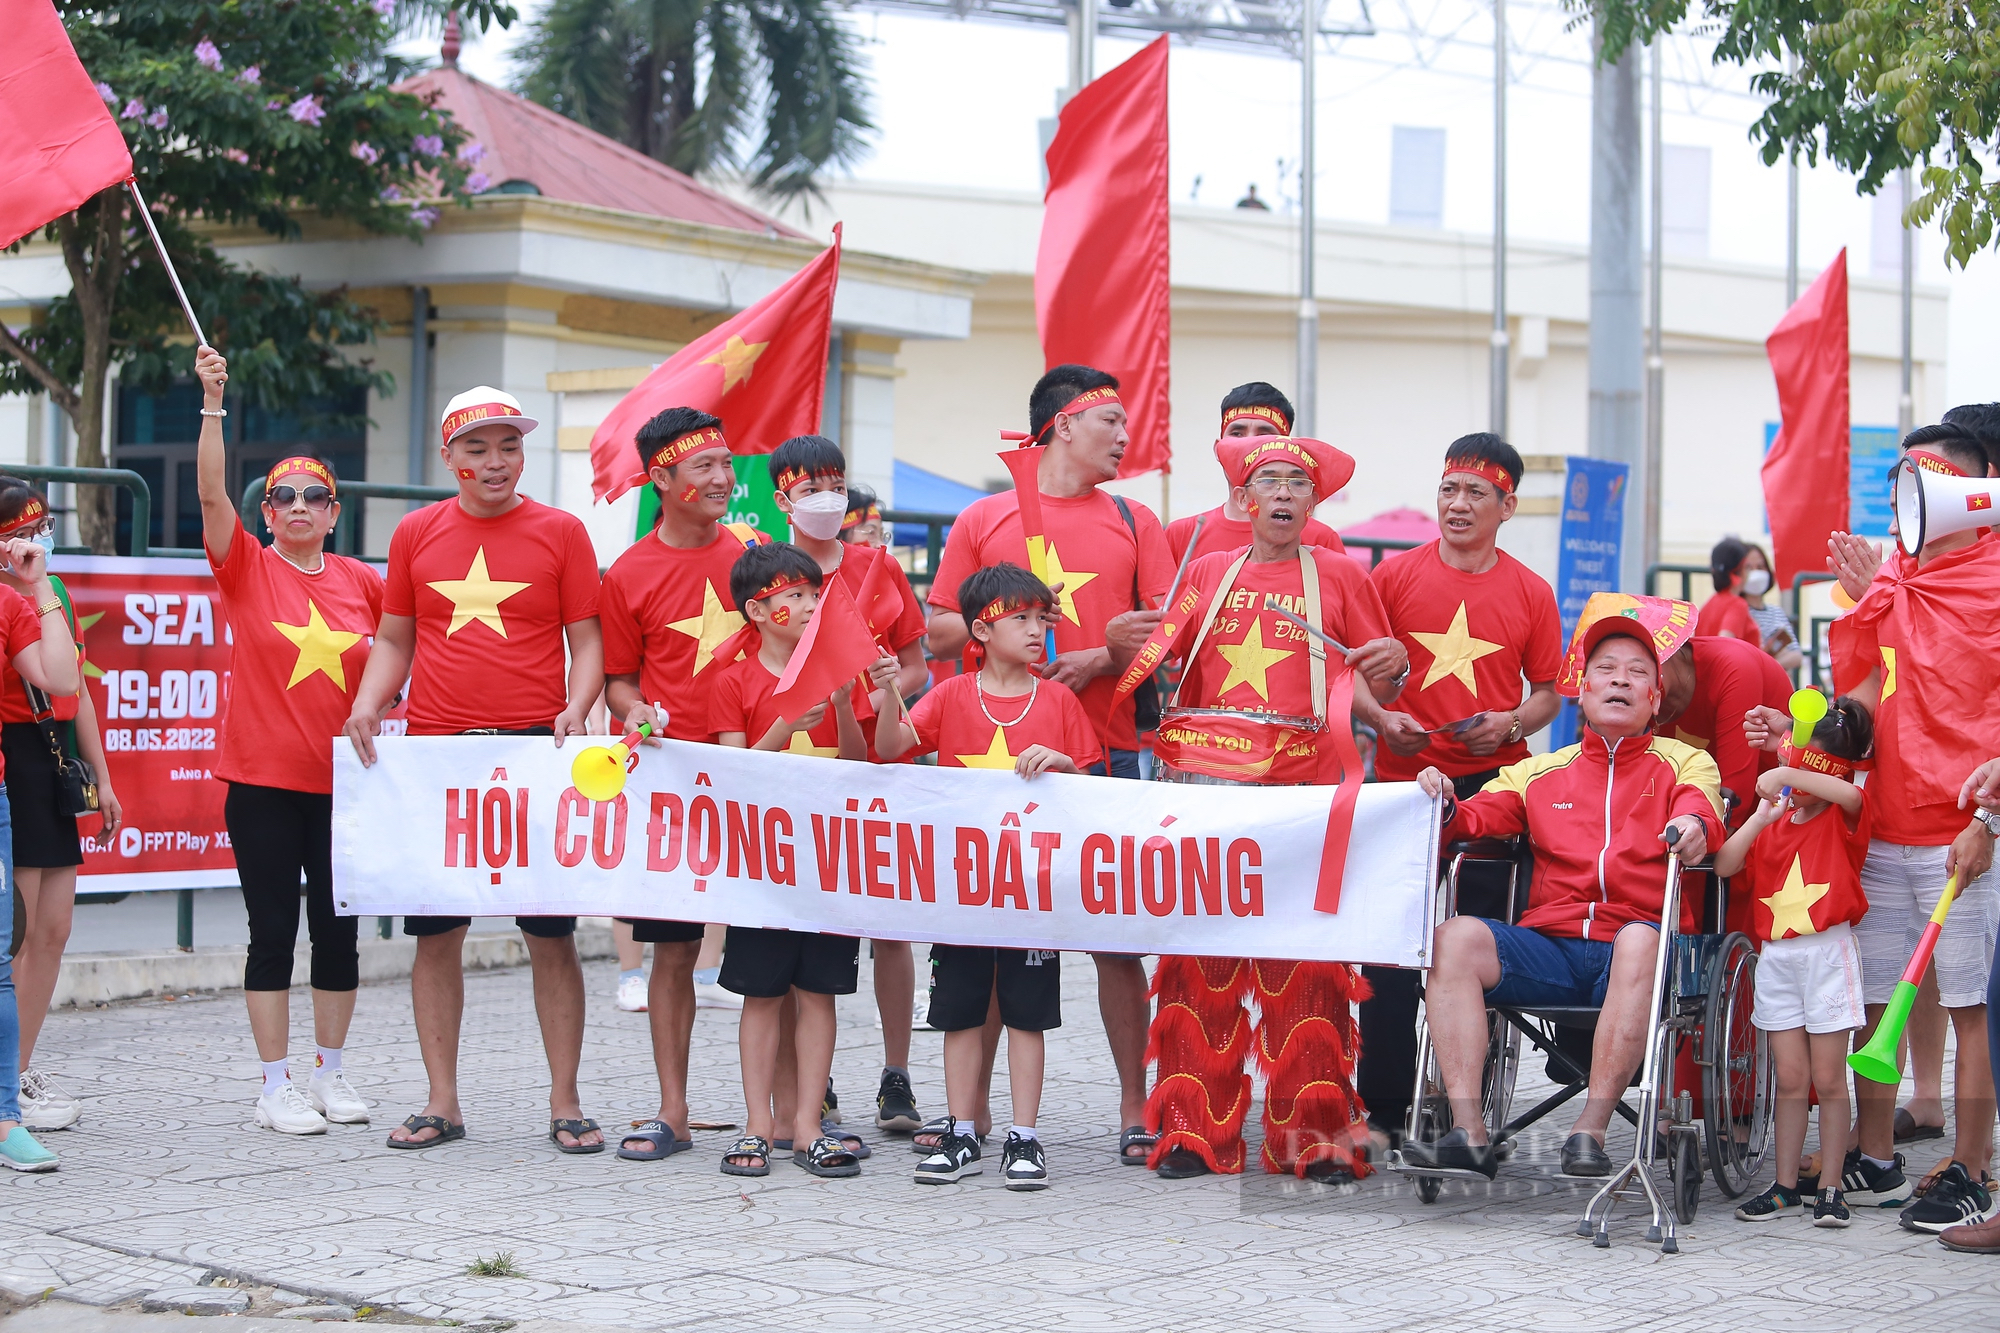 Dàn CĐV xinh đẹp kéo đến sân cổ vũ U23 Việt Nam - Ảnh 1.